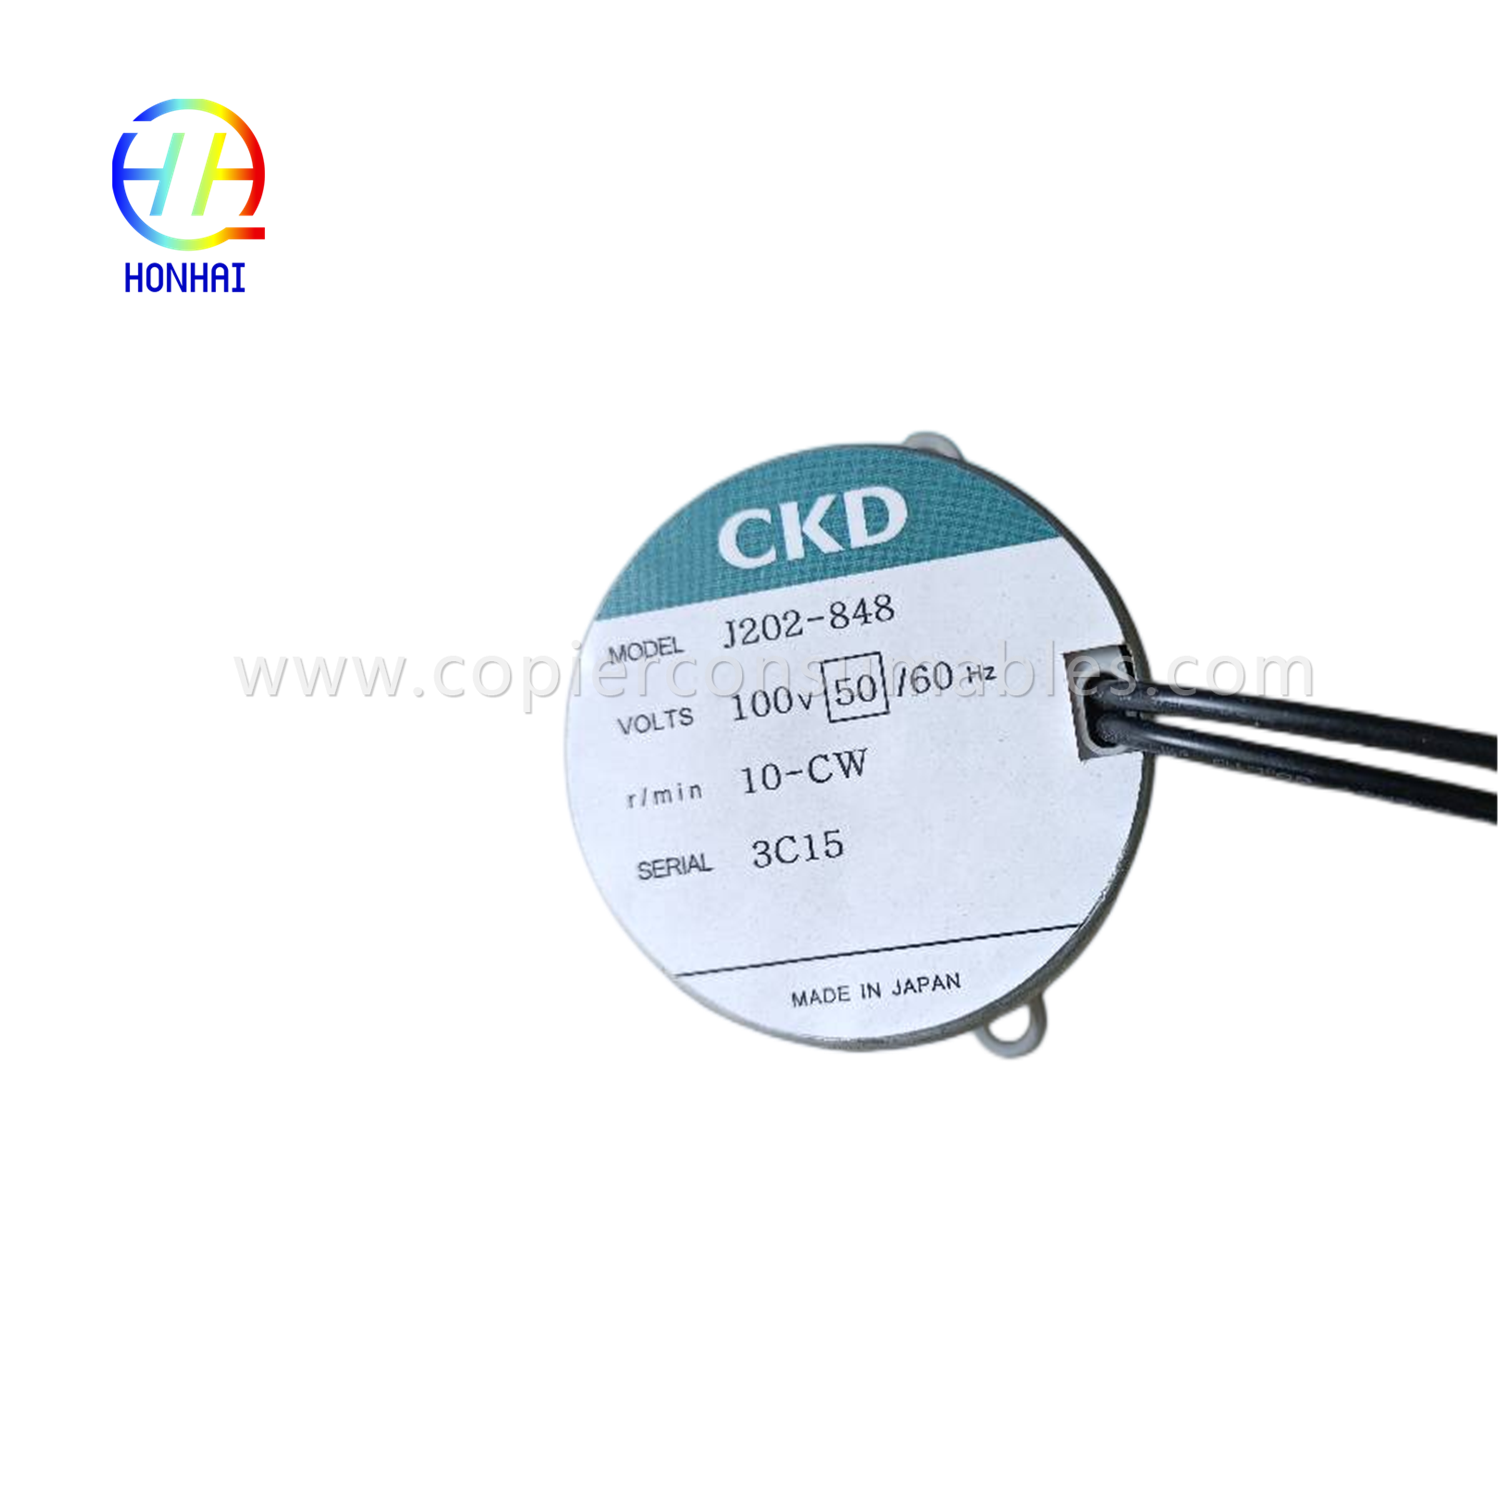 Imoto ye-CKD J202-848 100v-50Hz 10rpm CW3